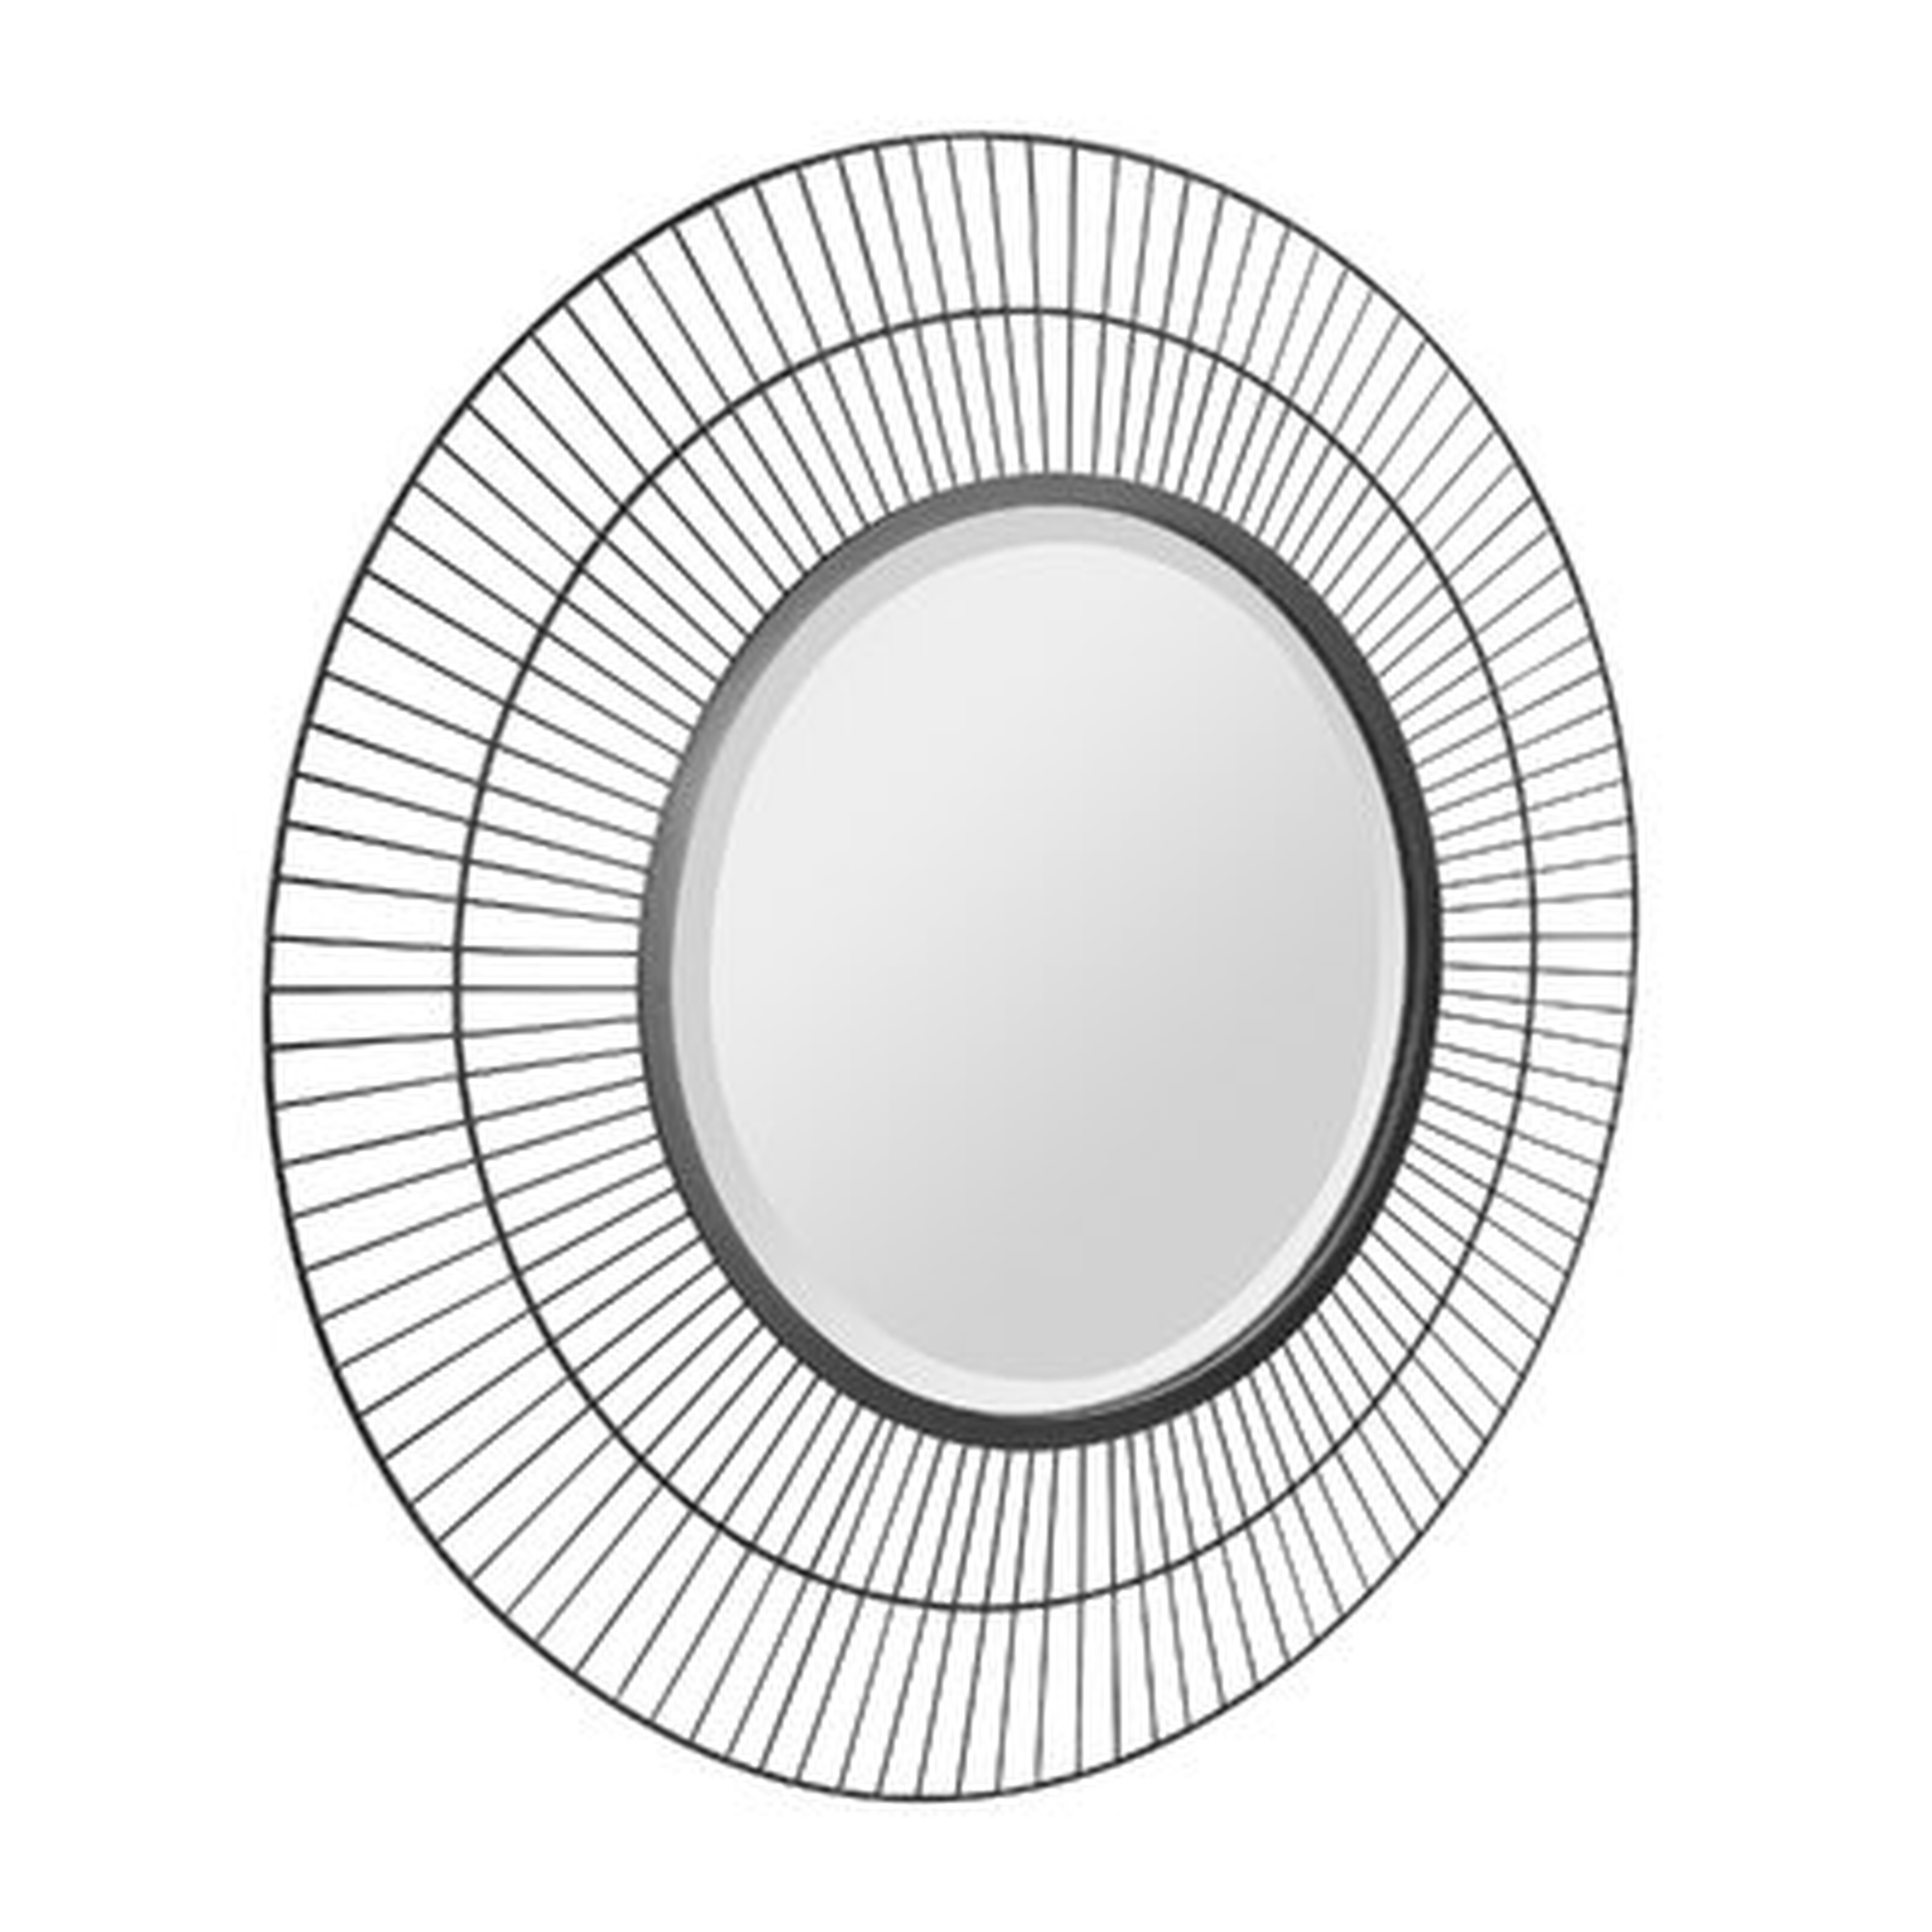 Stonebriar 28" Decorative Modern Round Metal Wire Mirror For Wall - Wayfair